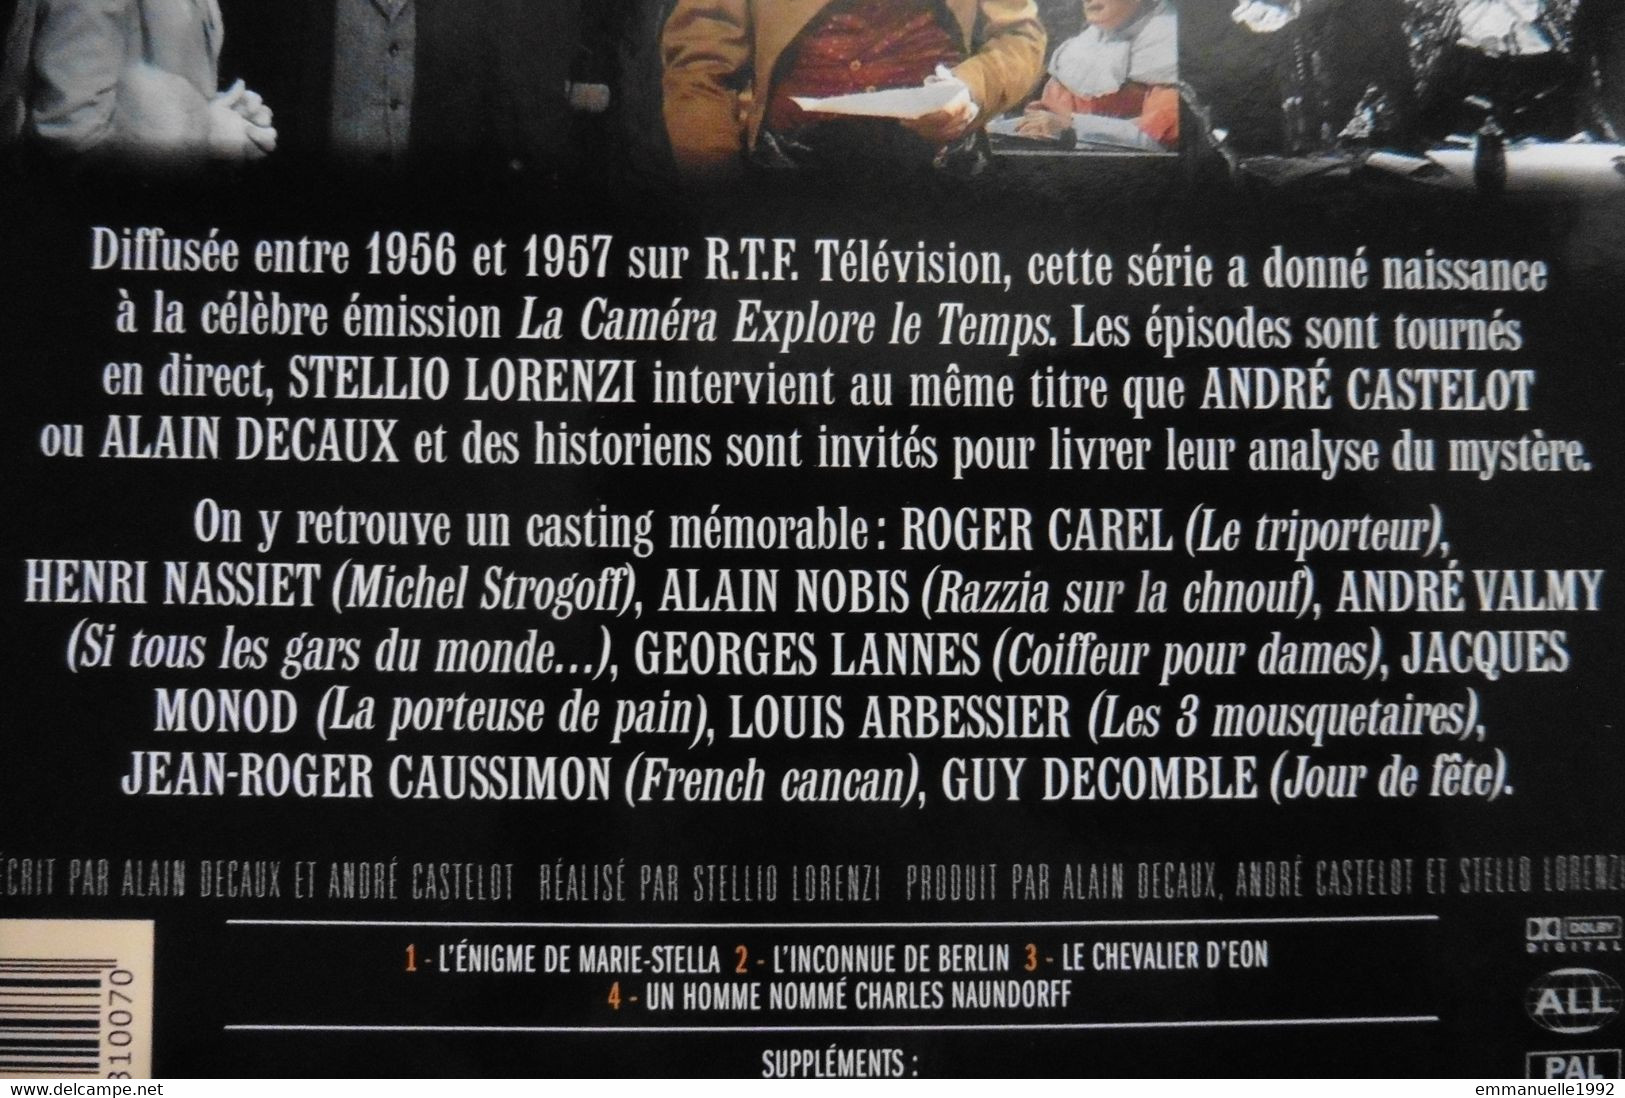 DVD Série TV Les énigmes De L'Histoire Decaux Castelot - Le Chevalier D'Eon - Sans Boitier - RARE ! - Documentary